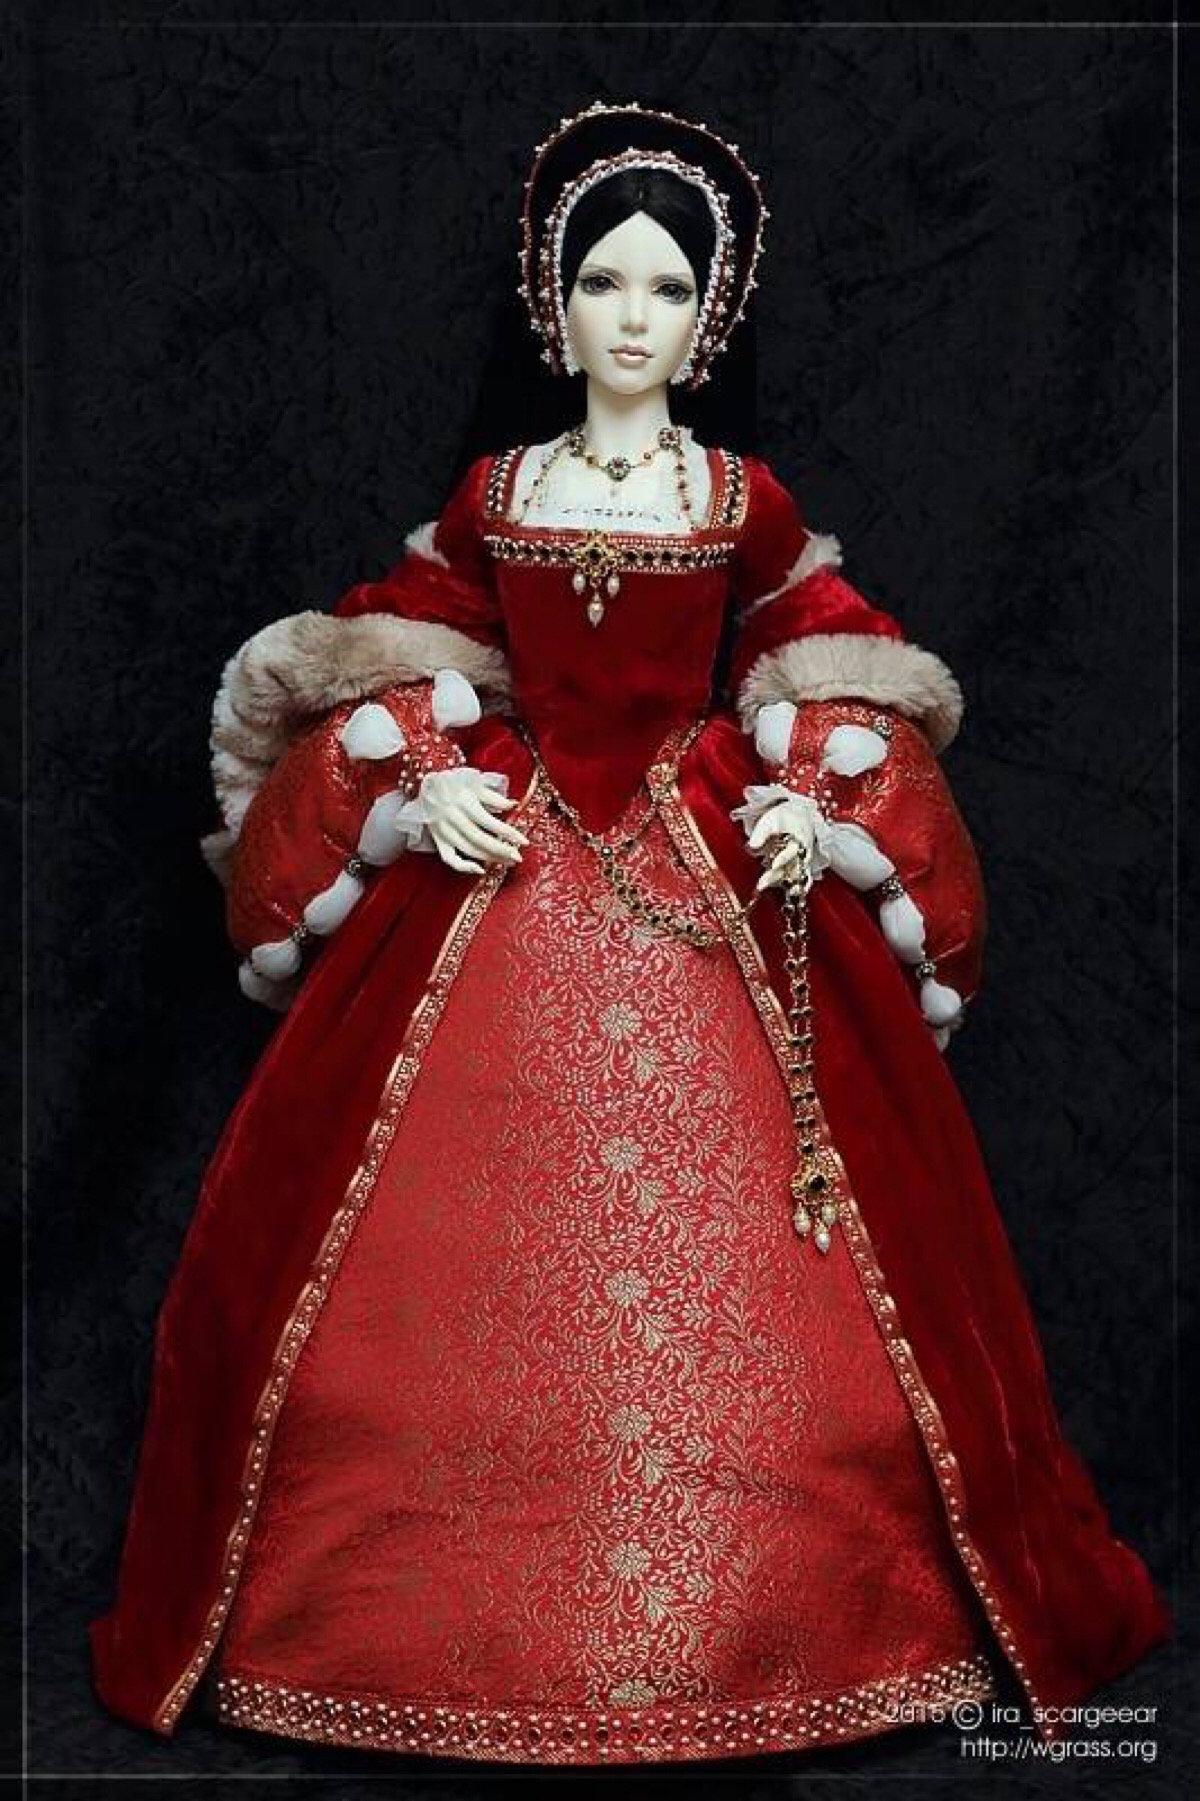 精美的古装娃娃,打扮成都铎朝的贵妇